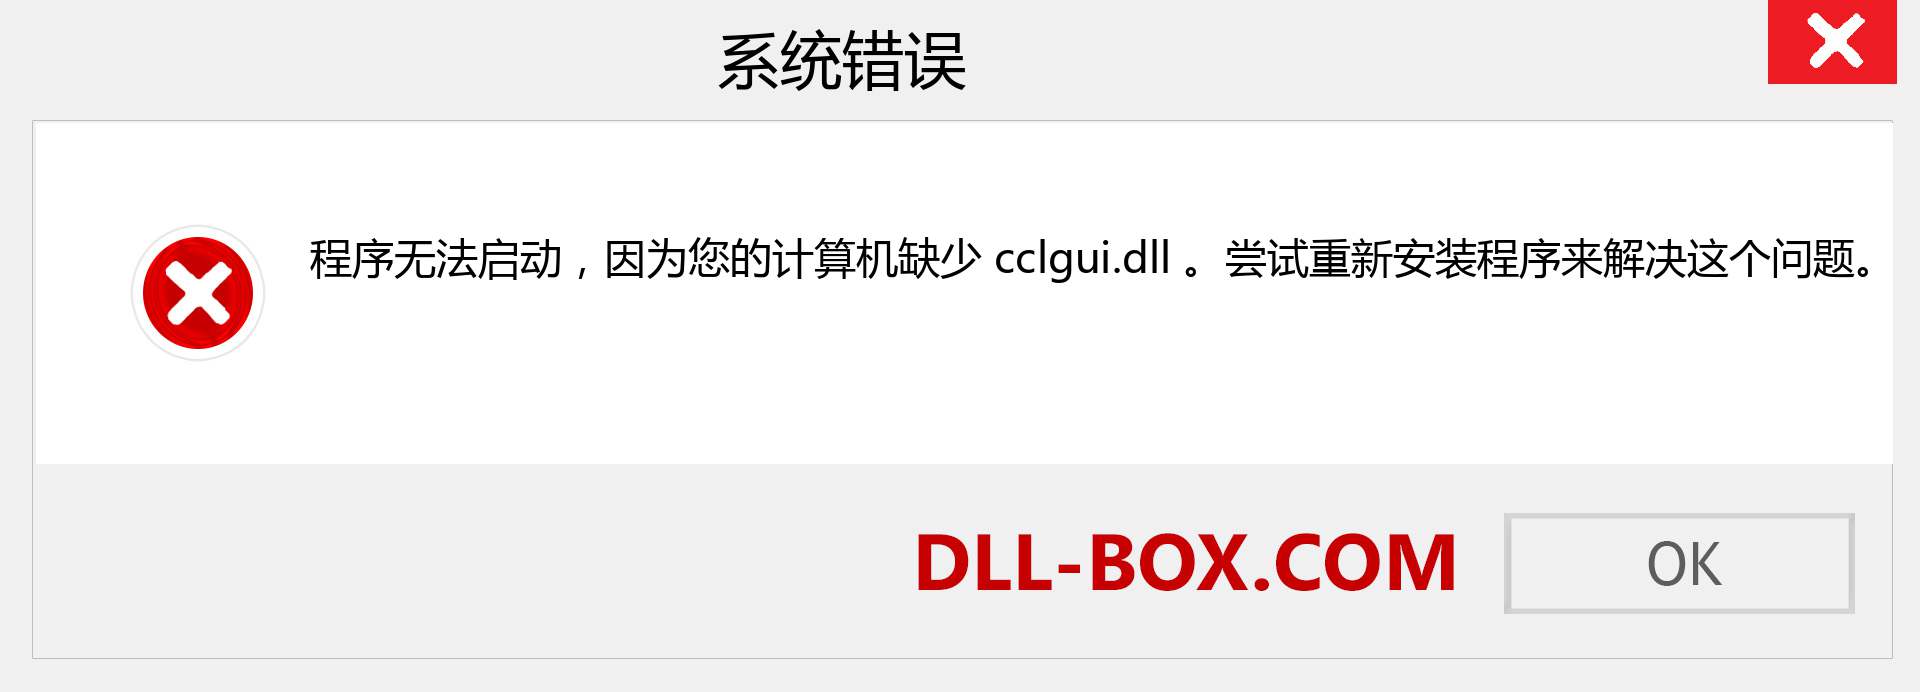 cclgui.dll 文件丢失？。 适用于 Windows 7、8、10 的下载 - 修复 Windows、照片、图像上的 cclgui dll 丢失错误